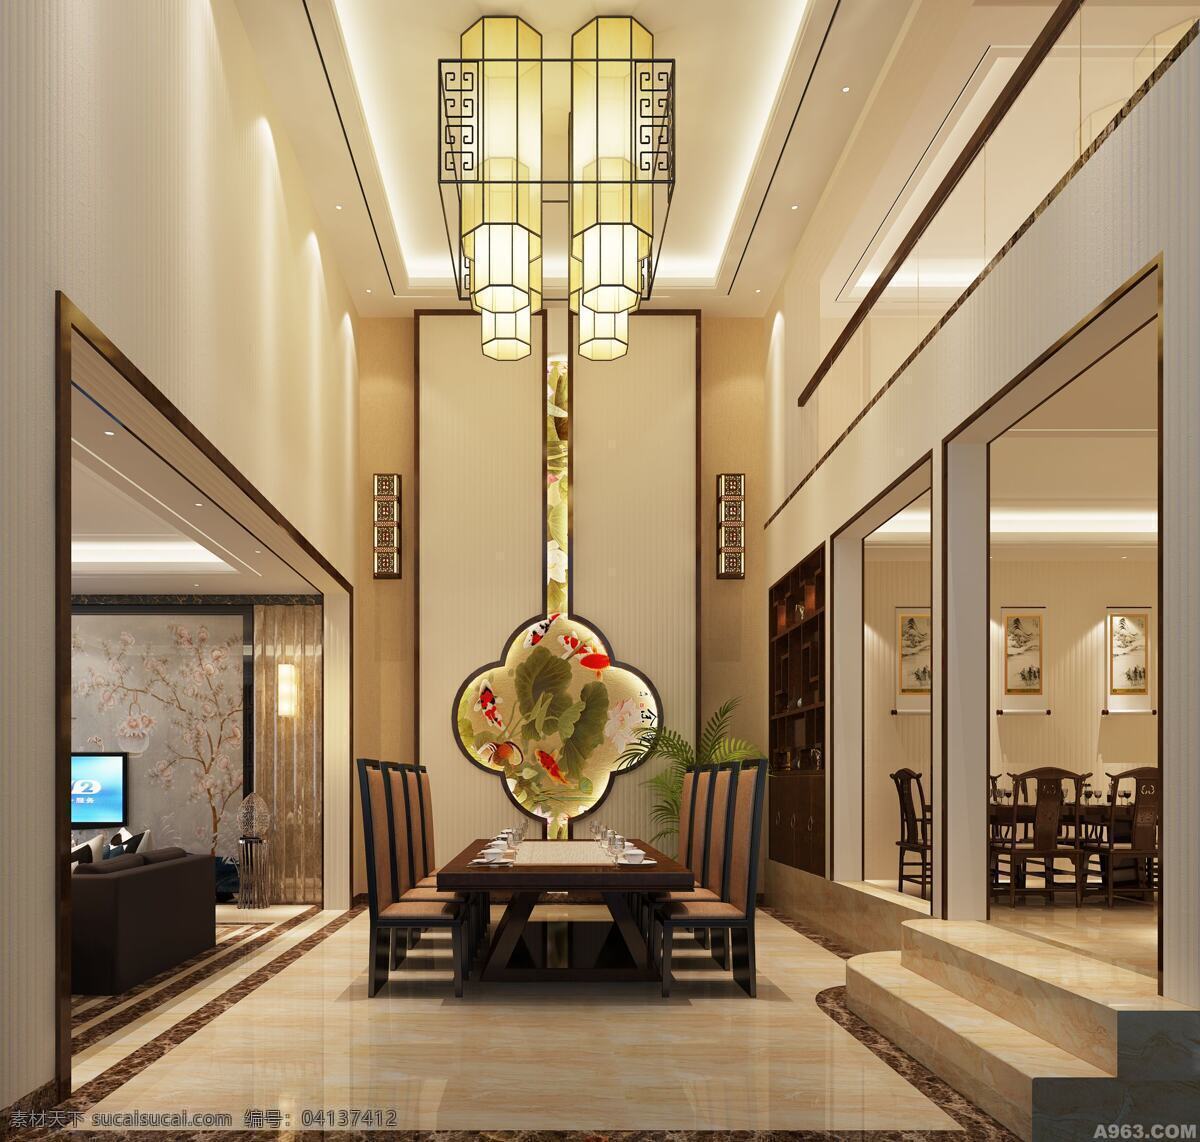 中式大厅 家装效果图 大堂灯 大堂装修 宽广大厅 客厅效果图 客厅 3d设计 室内模型